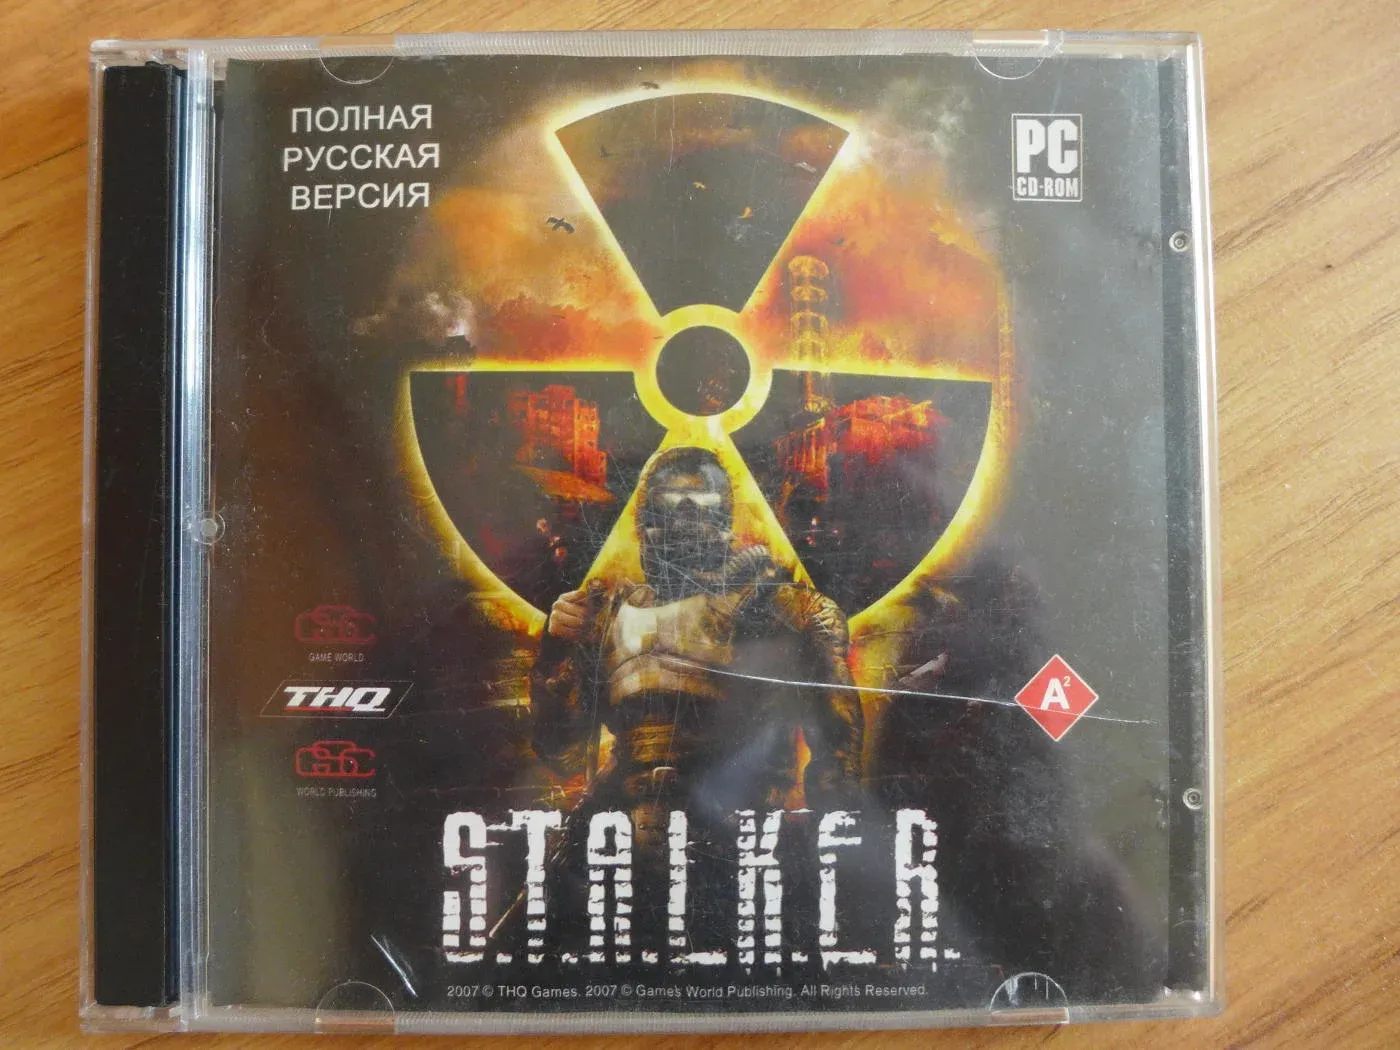 Коллекционное издание сталкер тень Чернобыля. Сталкер ТЧ диск коробка. Диск сталкер тень Чернобыля диск. Сталкер 2 диск.